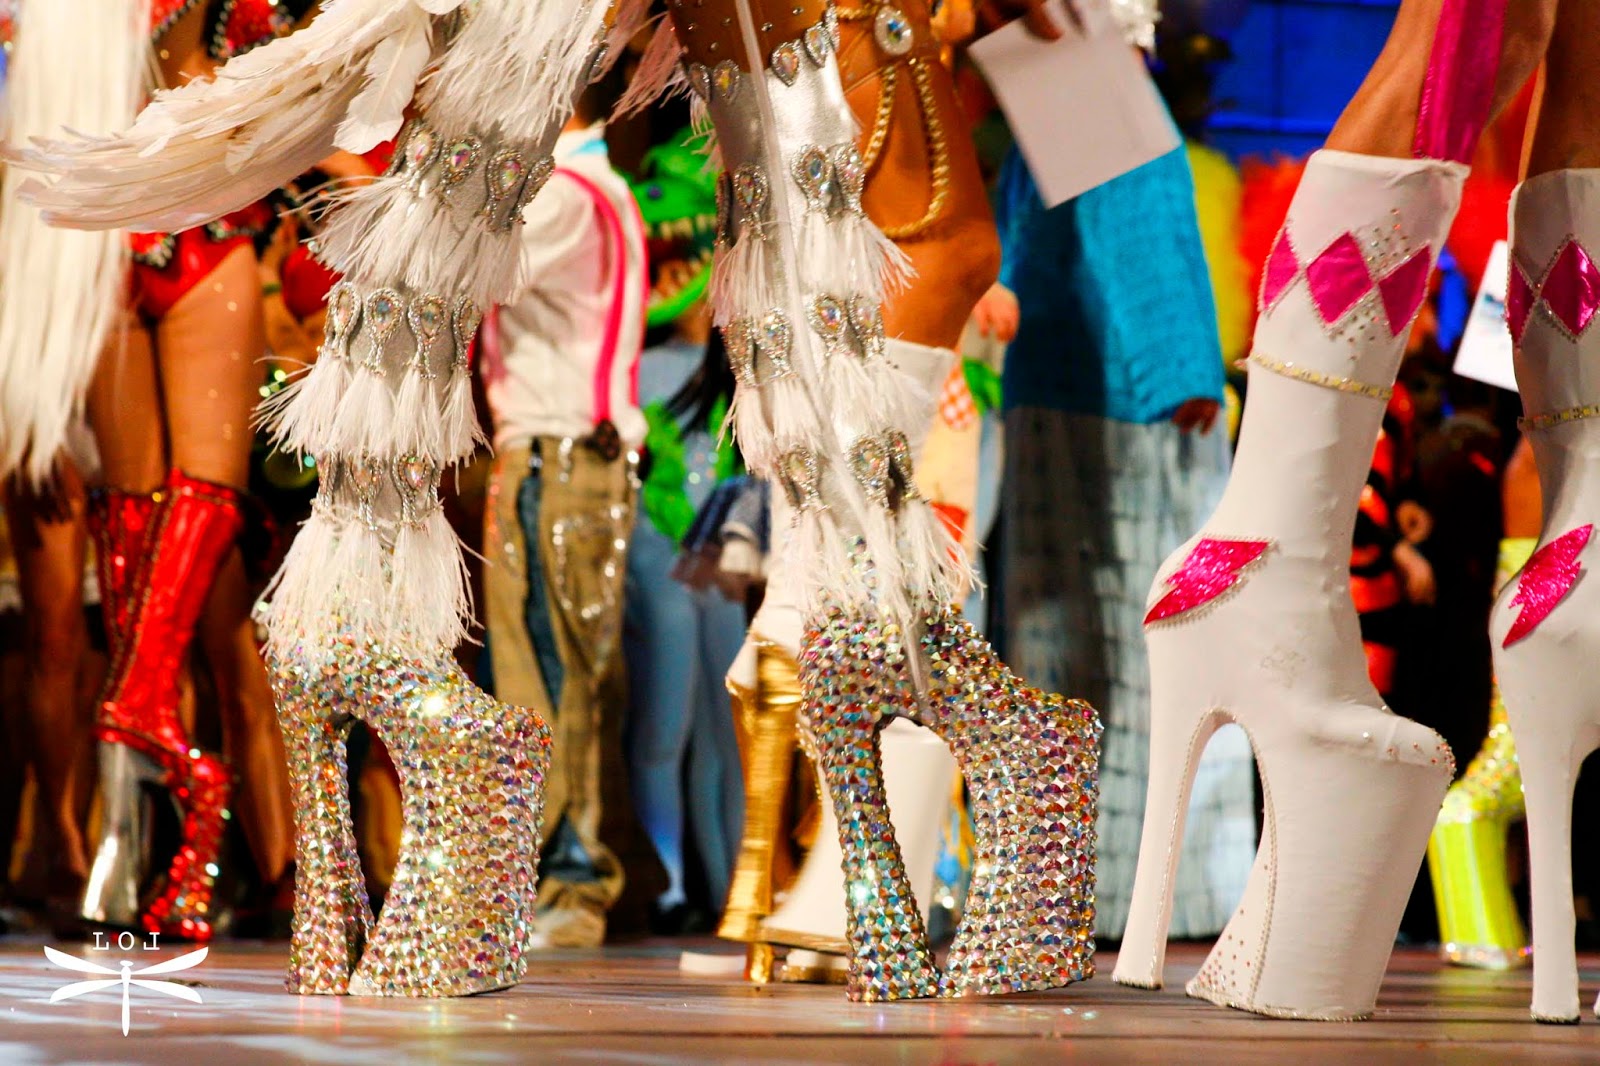 Gala-Drag-Queen-Las-Palmas-de-Gran-Canaria-2014-Leticia-Oliva-Lekue-ElblogdePatricia-plataformas-calzado-zapatos